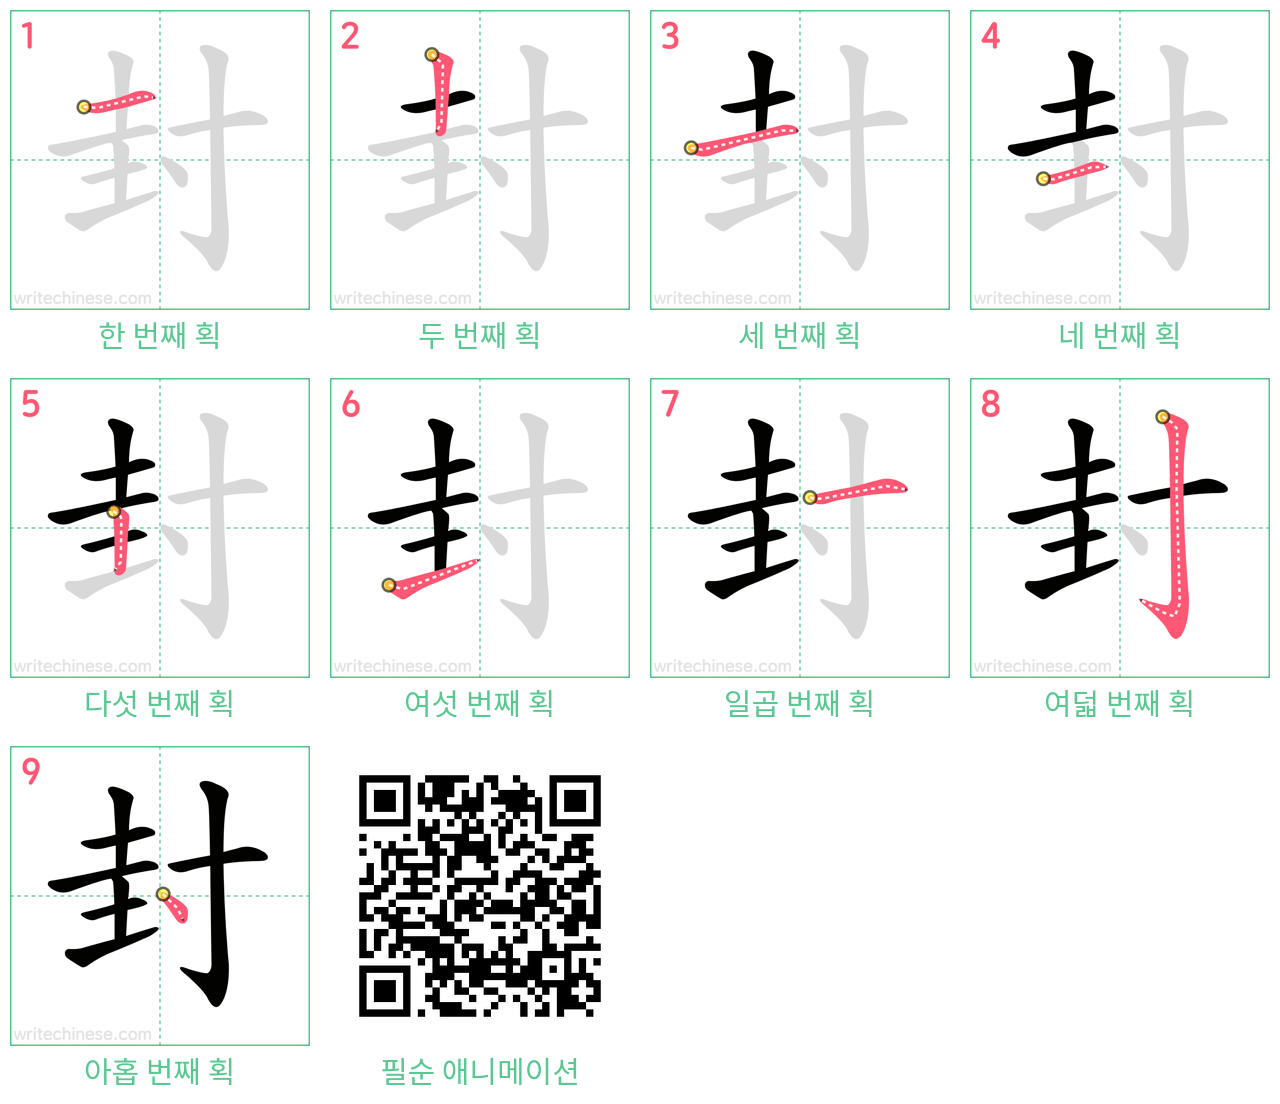 封 step-by-step stroke order diagrams